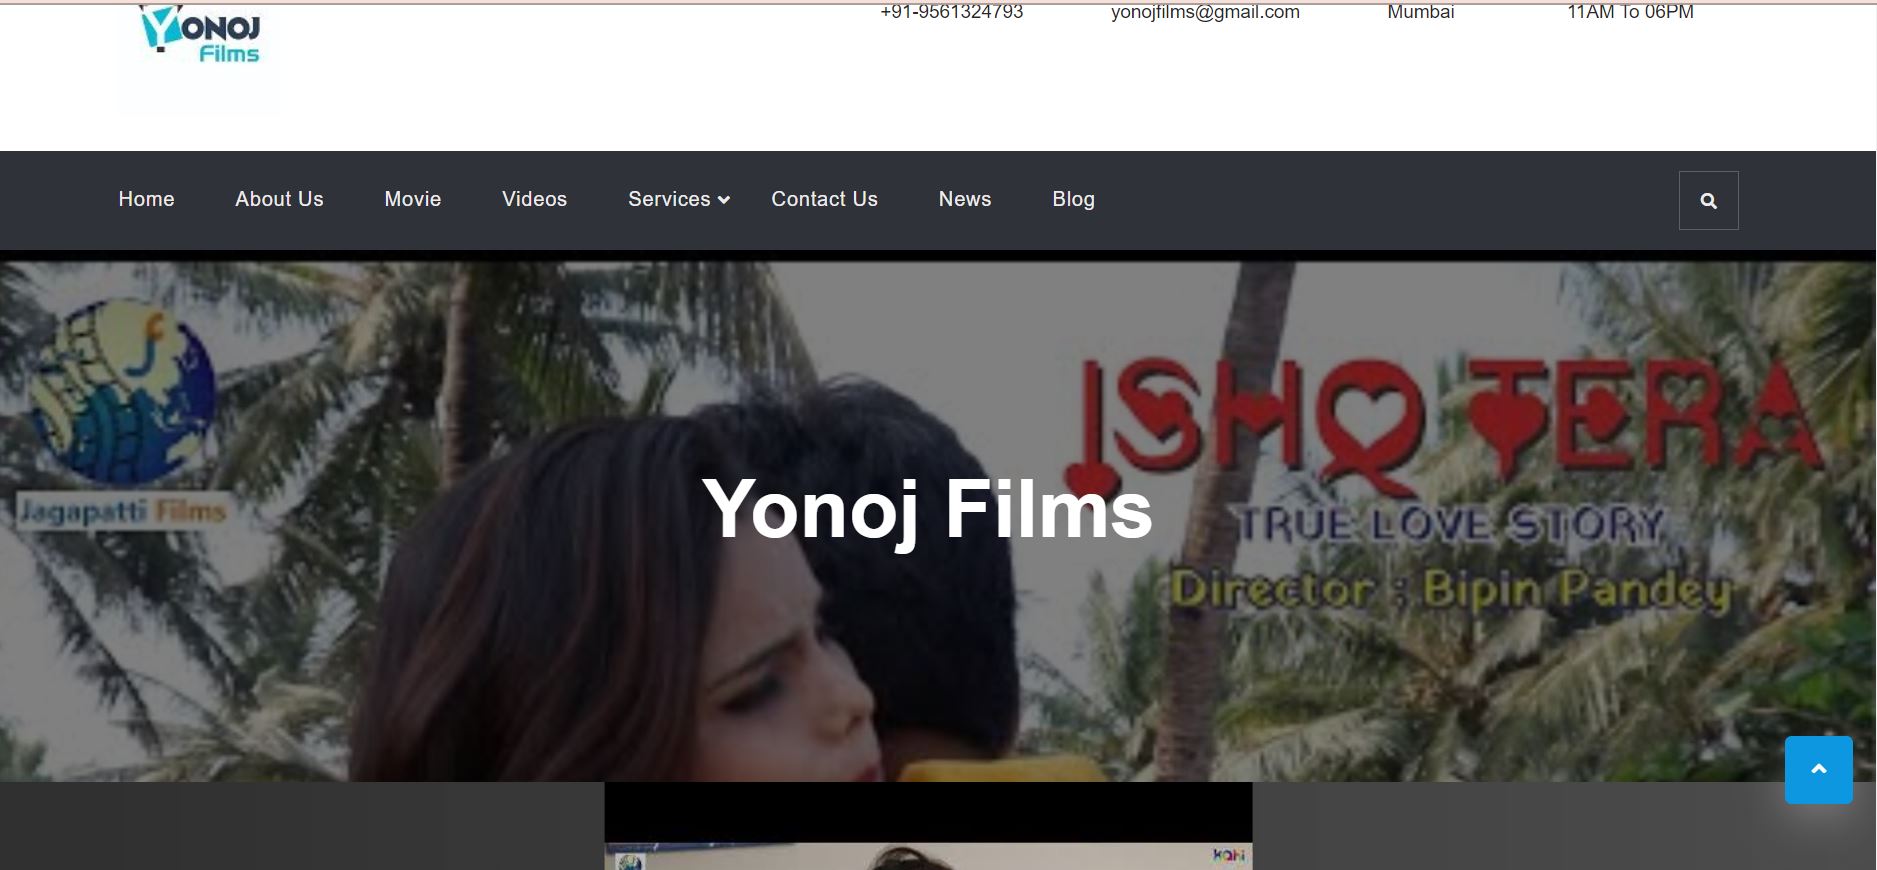 Yonoj Films